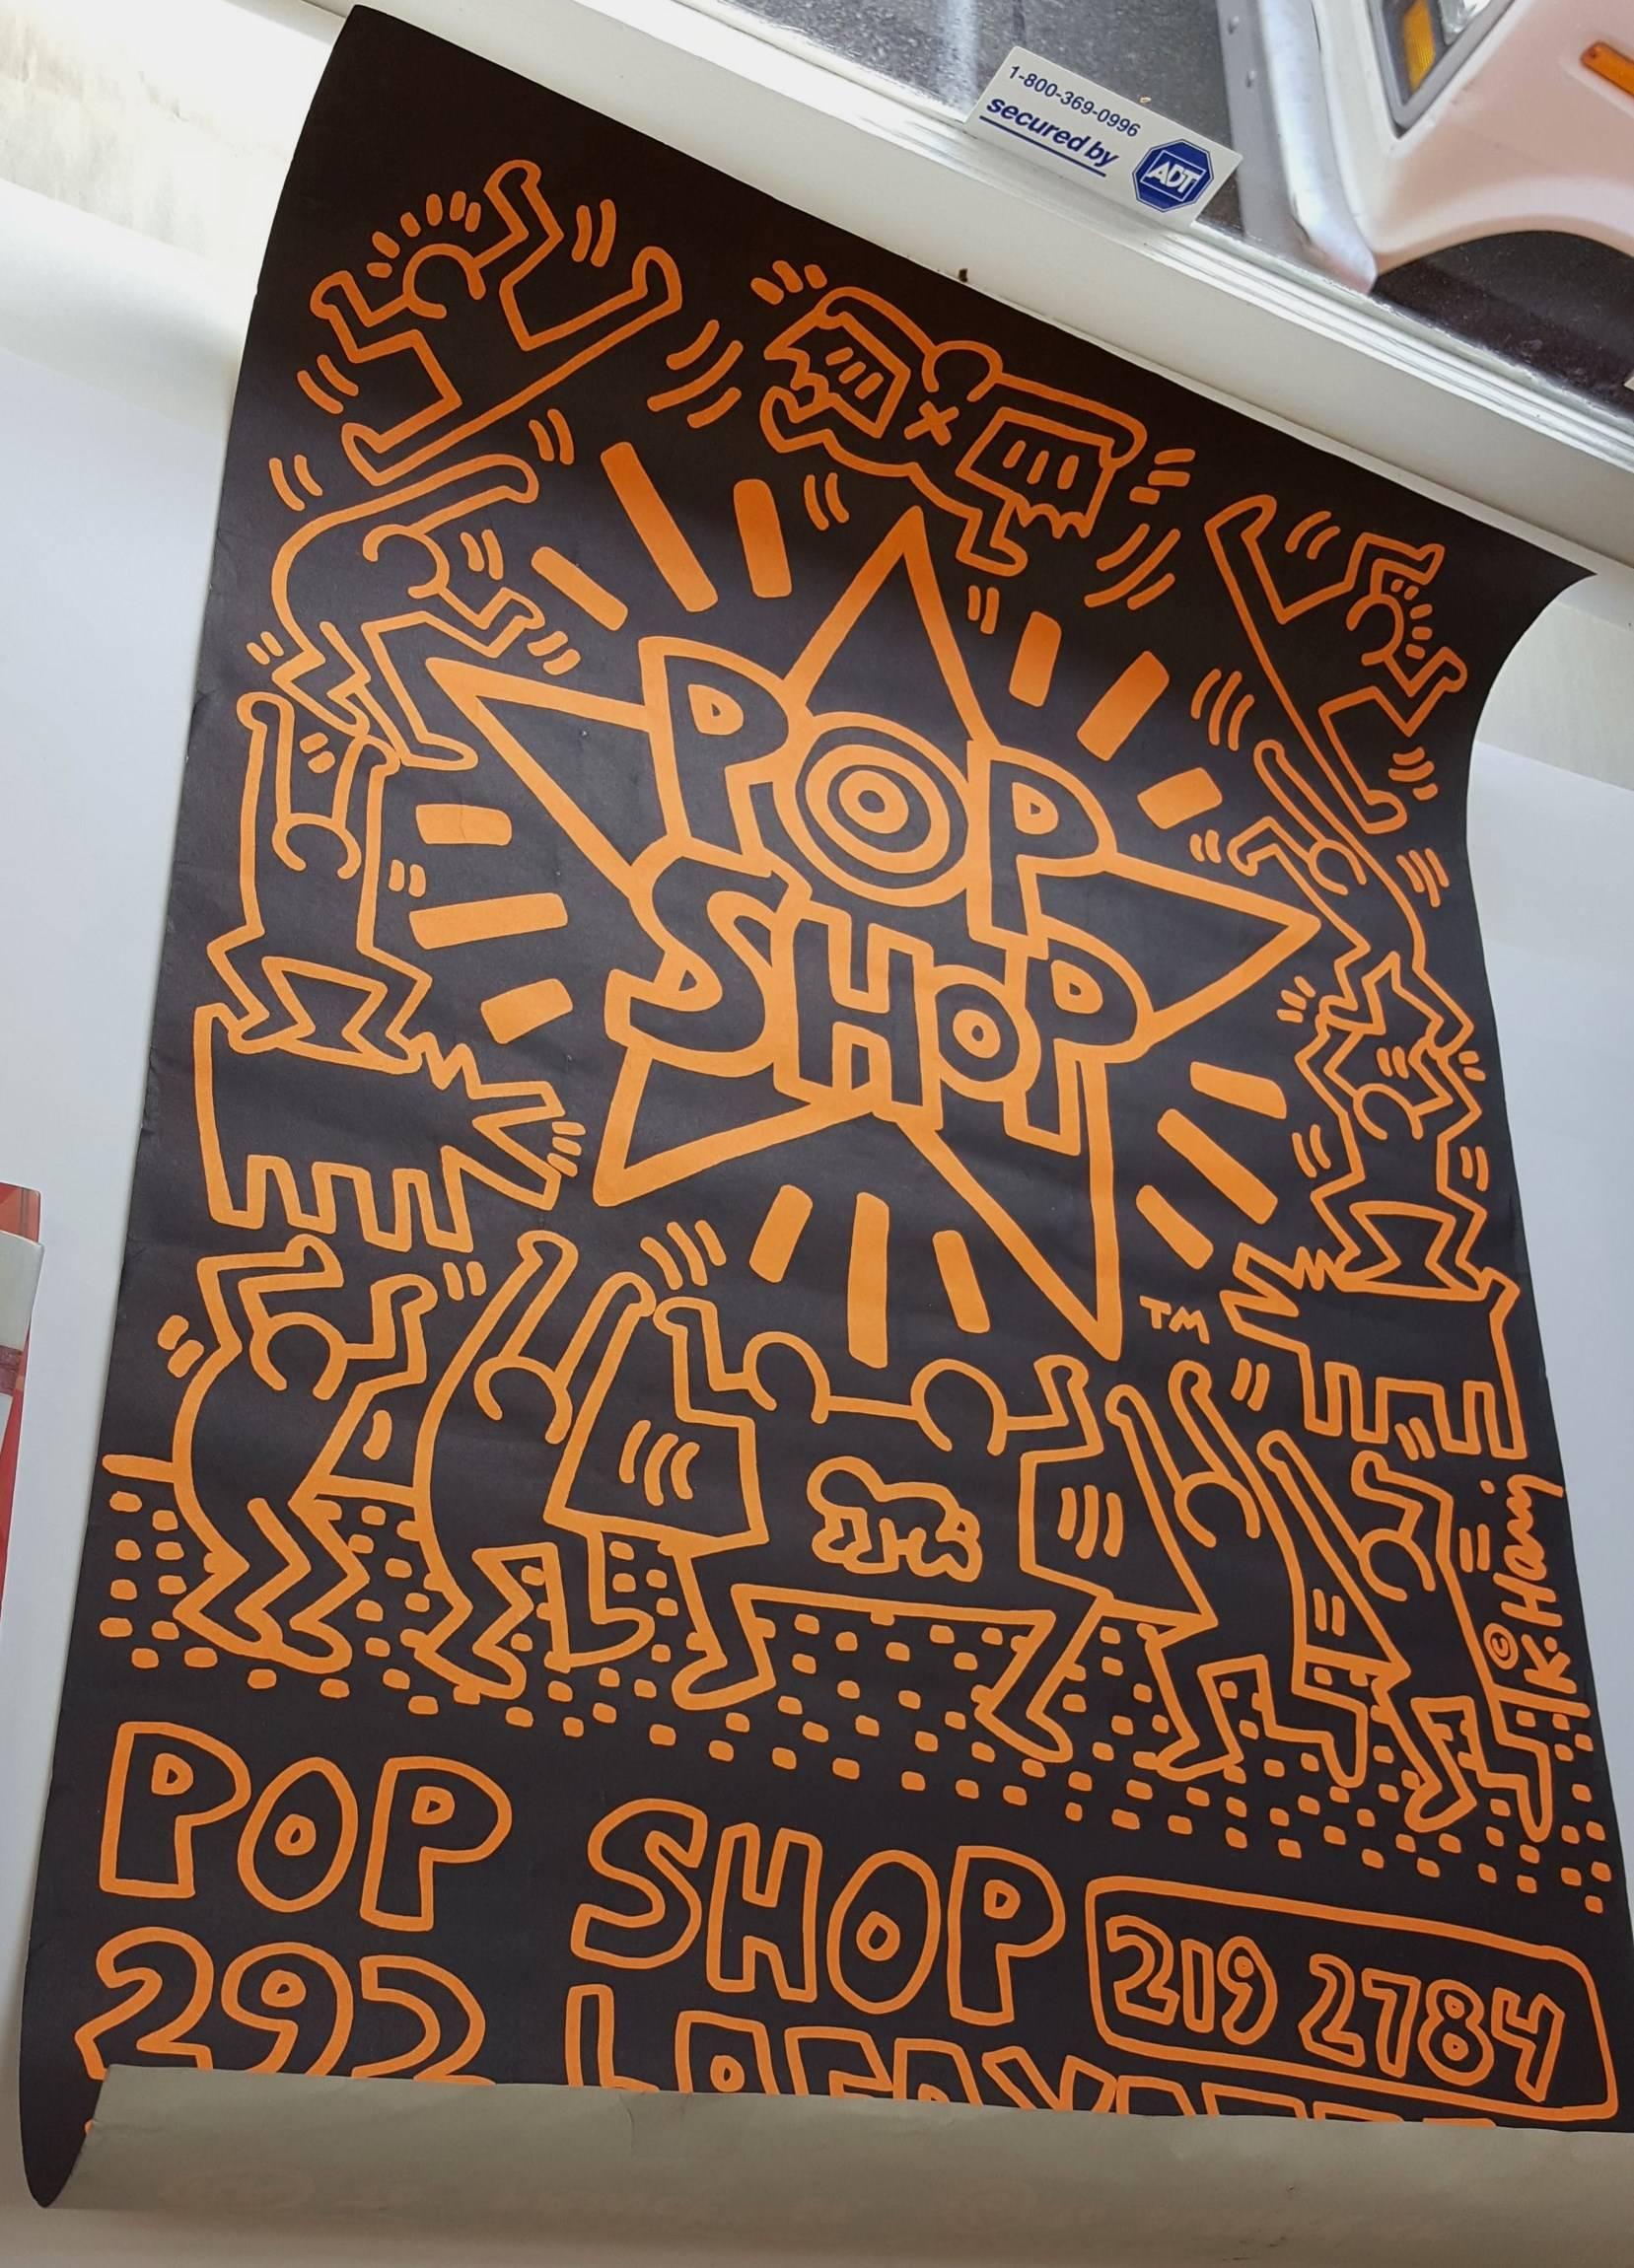 POP-Shop 4